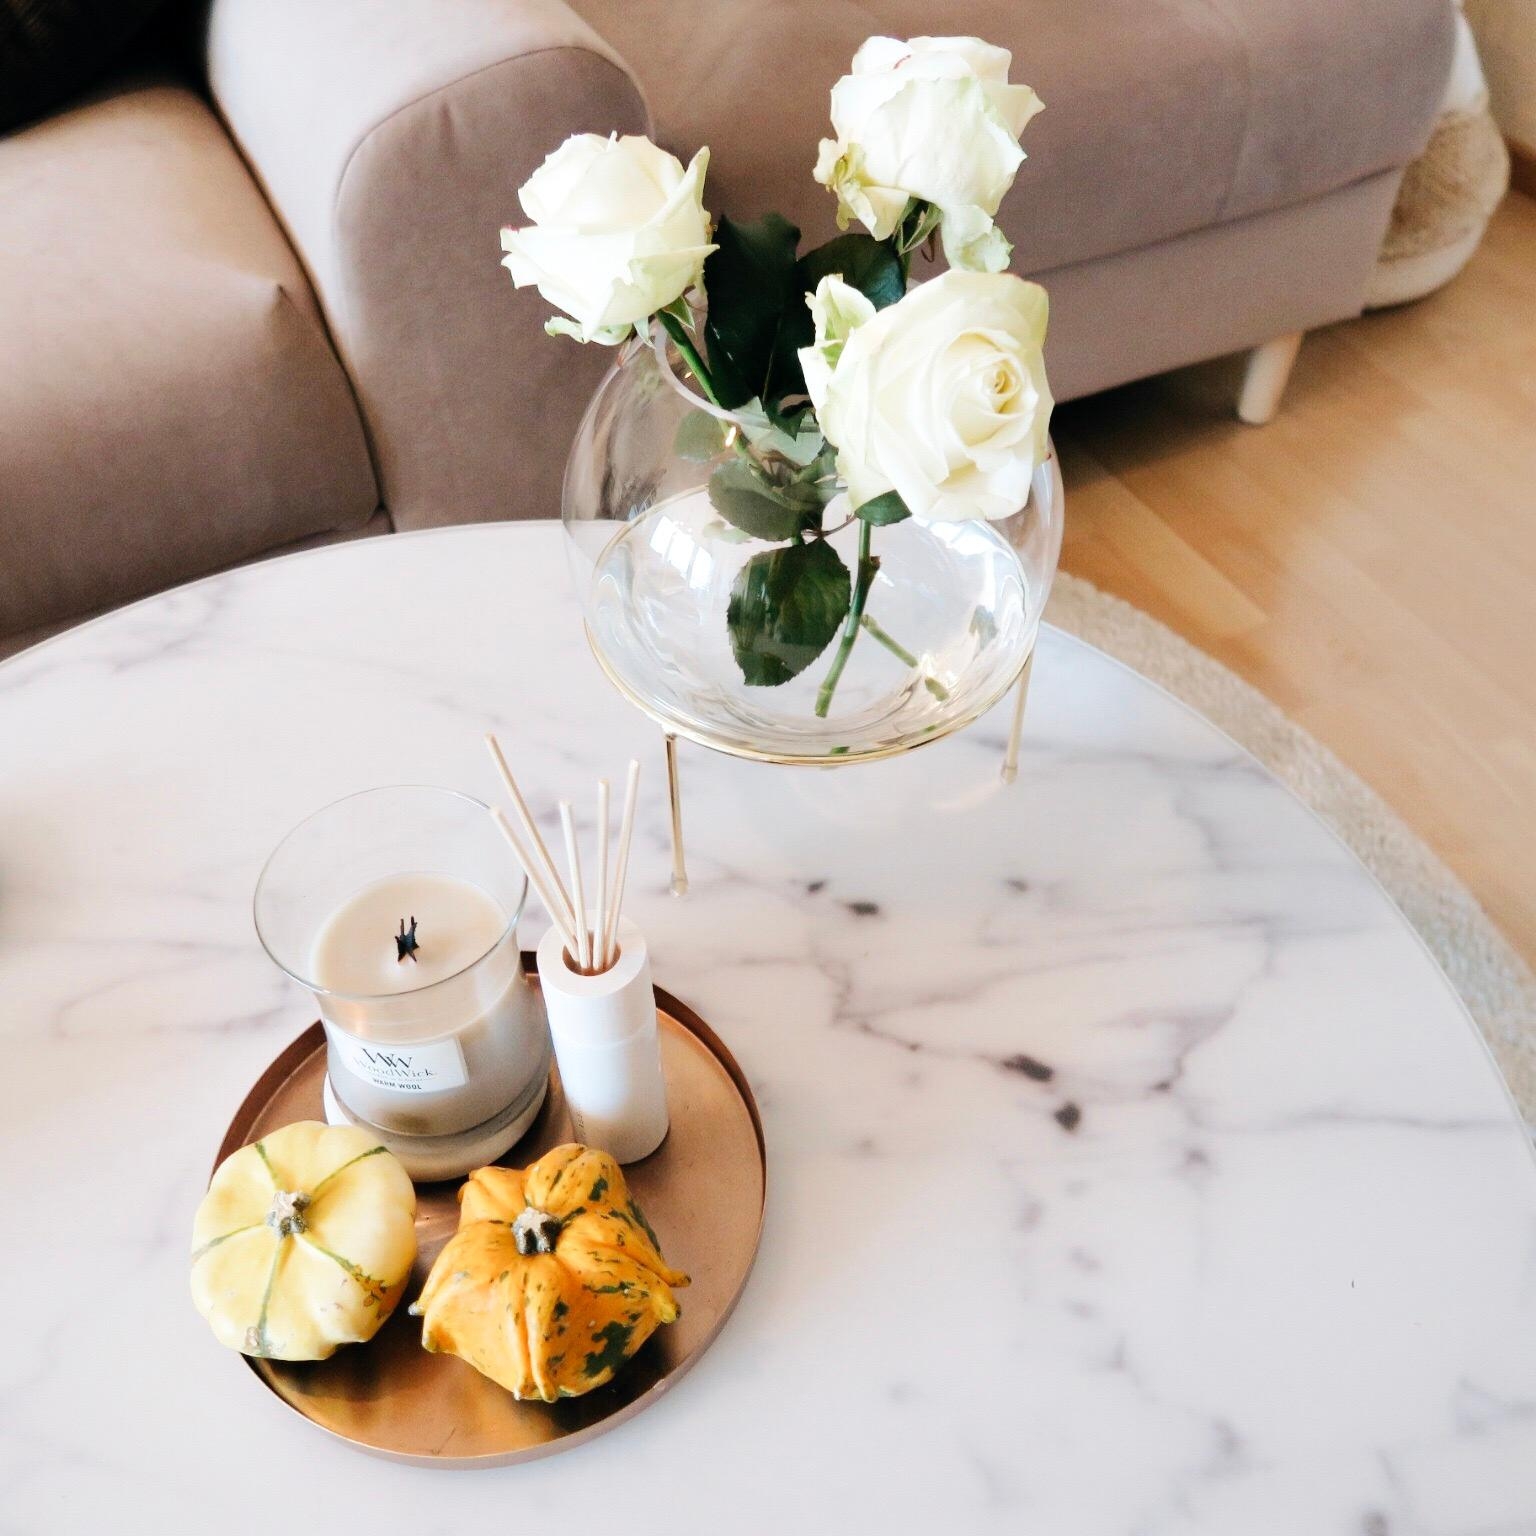 Zwei meiner absoluten Lieblingsdinge: Marmor und weiße Rosen. #neuhier #marble #whiteroses #coffeetable #couchmagazine